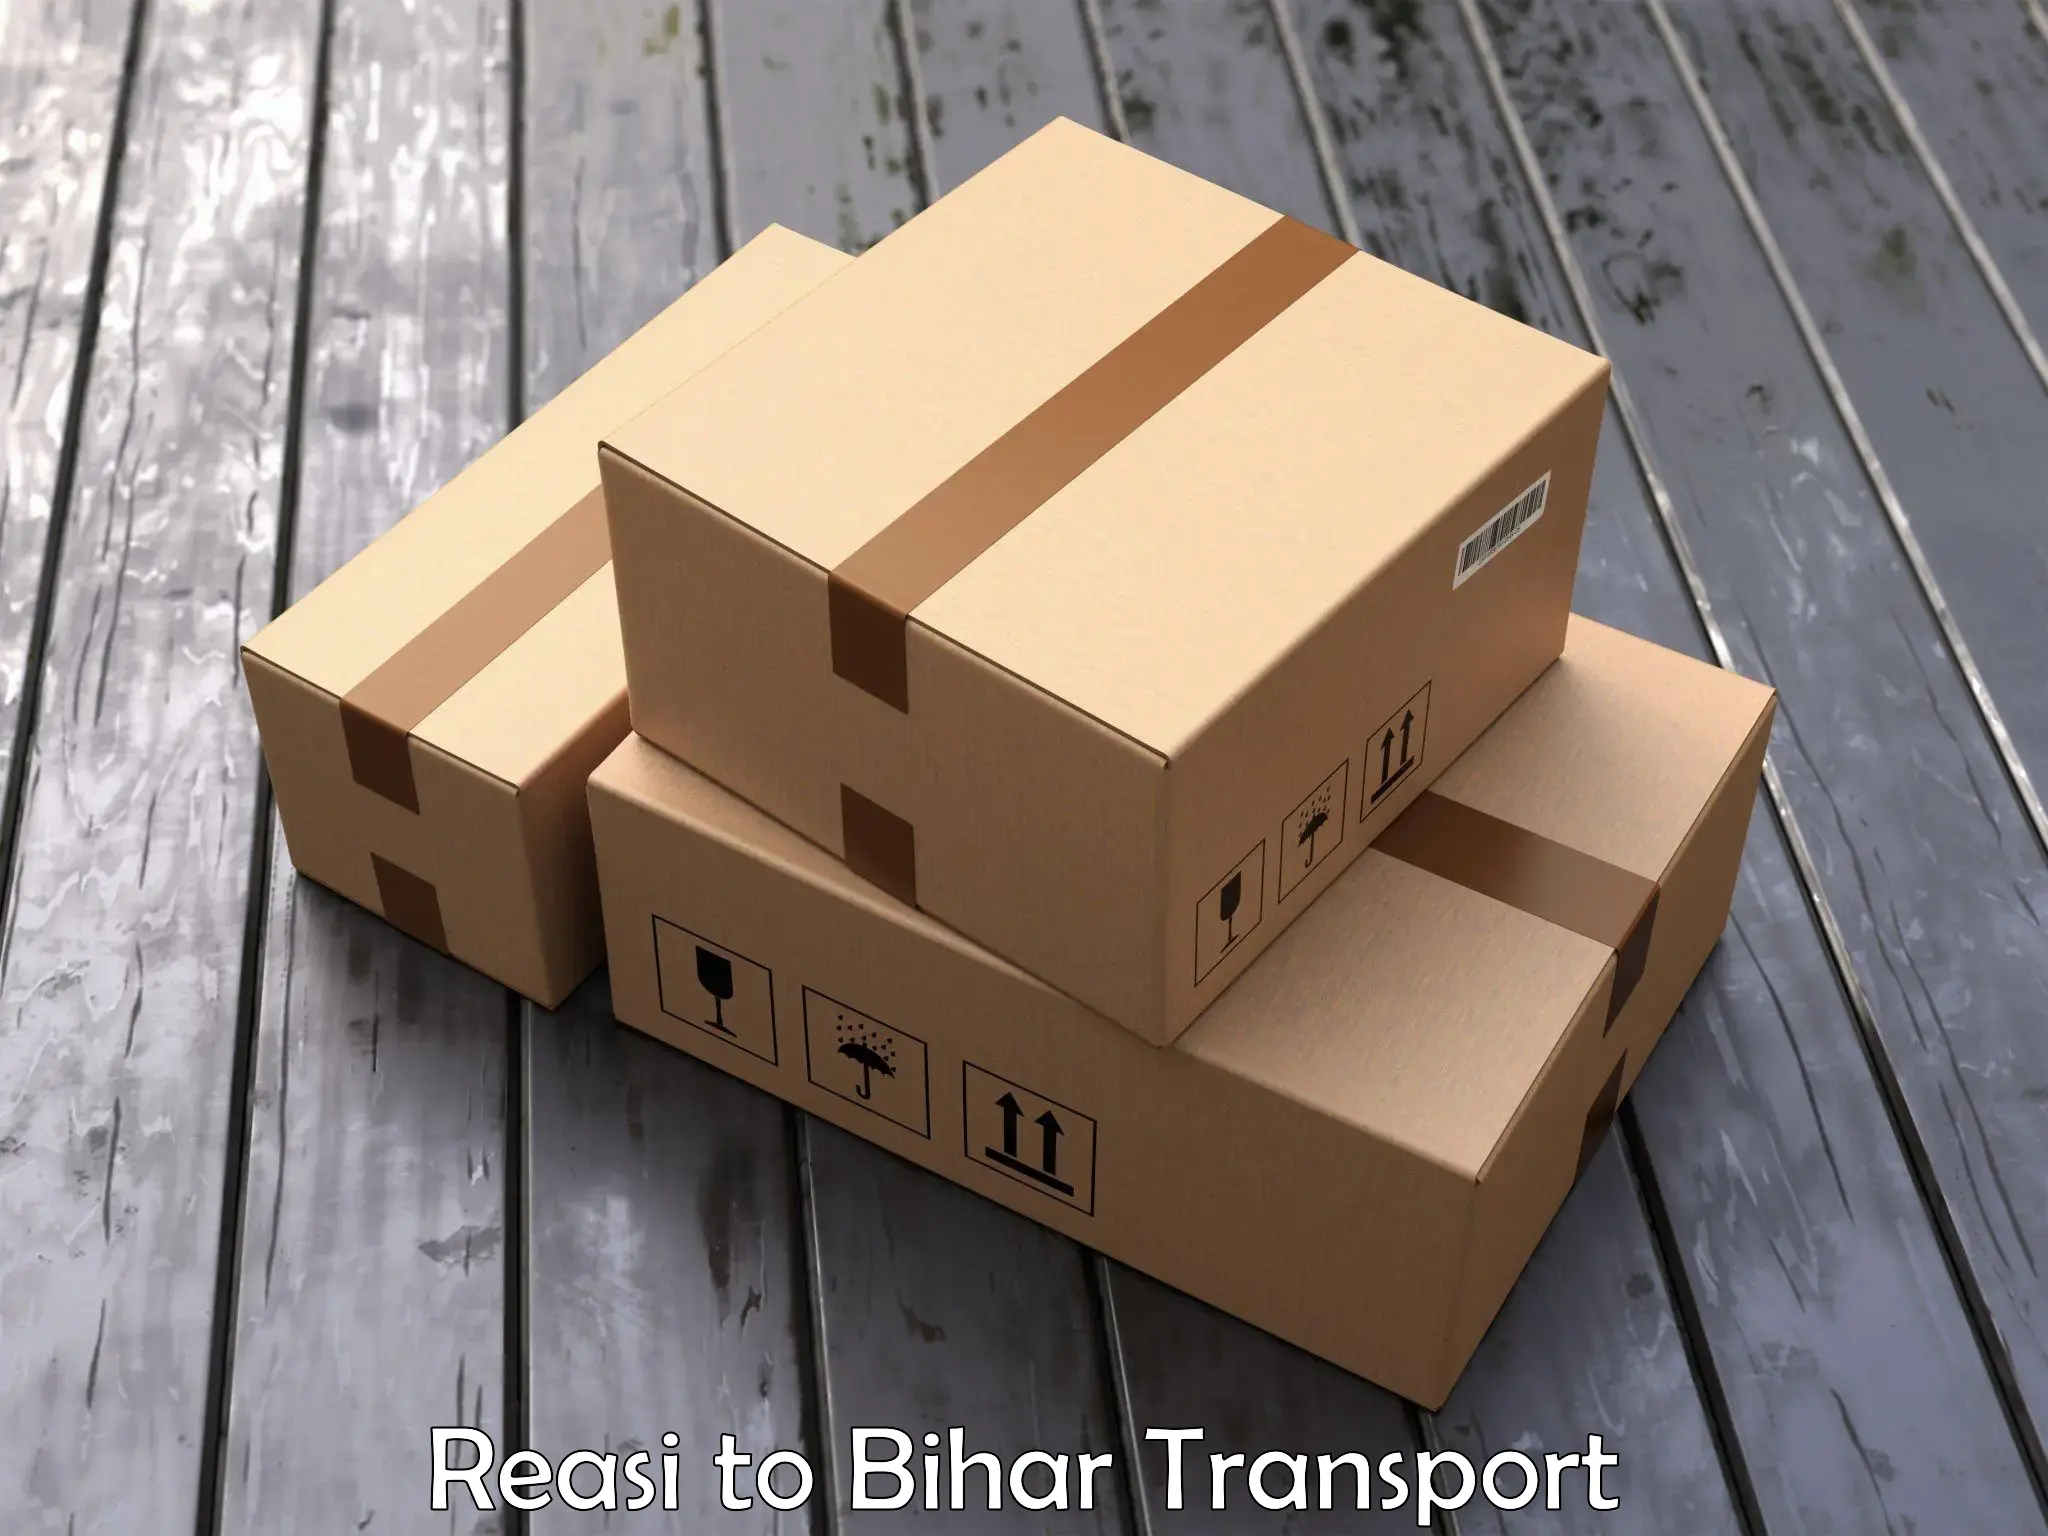 Truck transport companies in India Reasi to Tekari